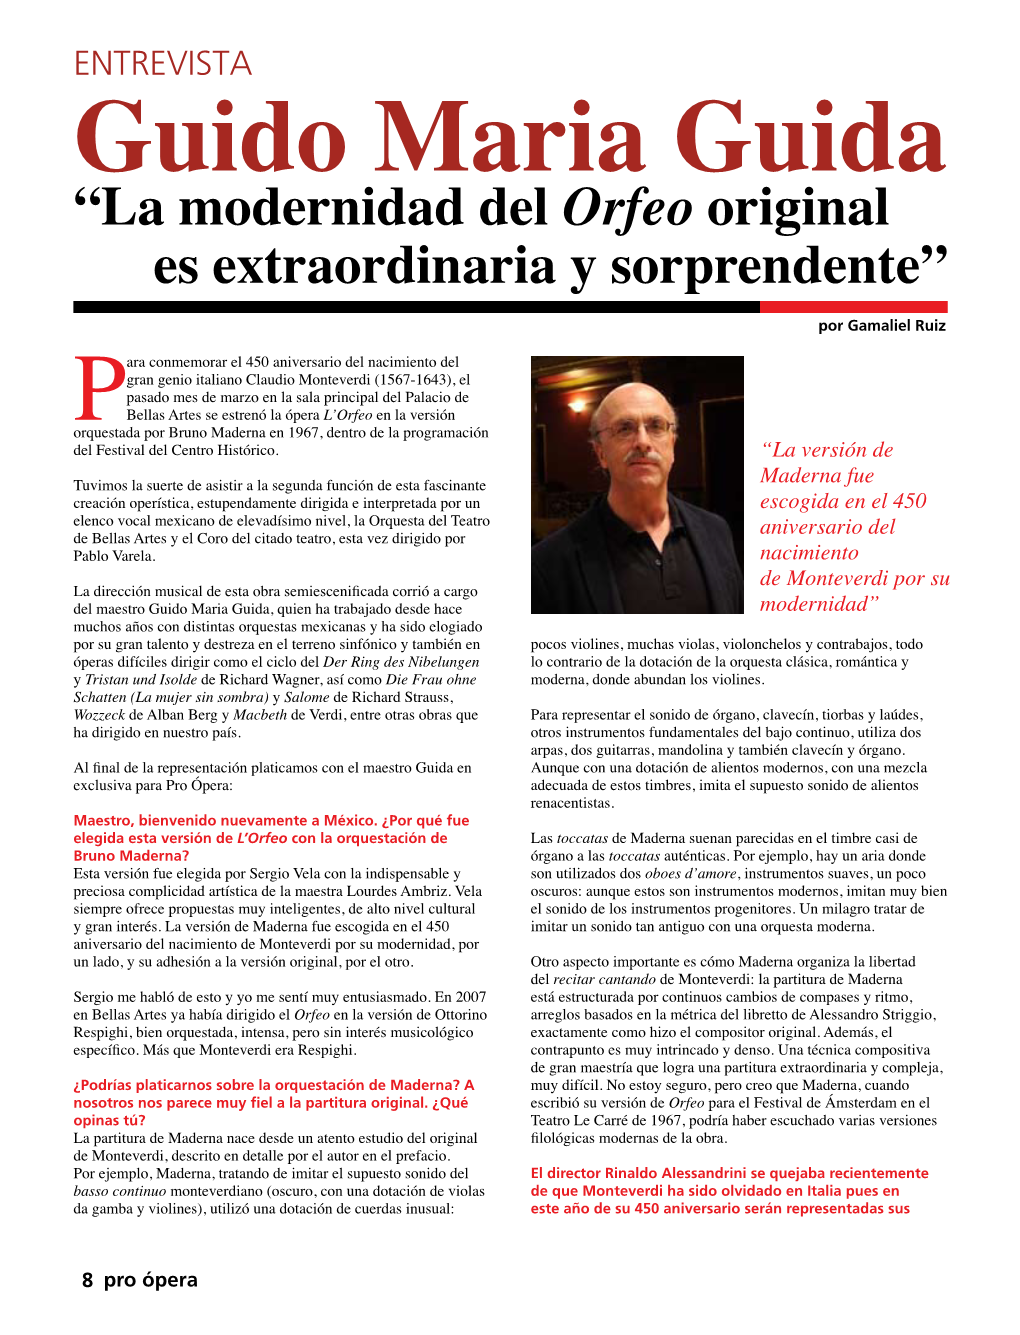 Guido Maria Guida “La Modernidad Del Orfeo Original Es Extraordinaria Y Sorprendente” Por Gamaliel Ruiz